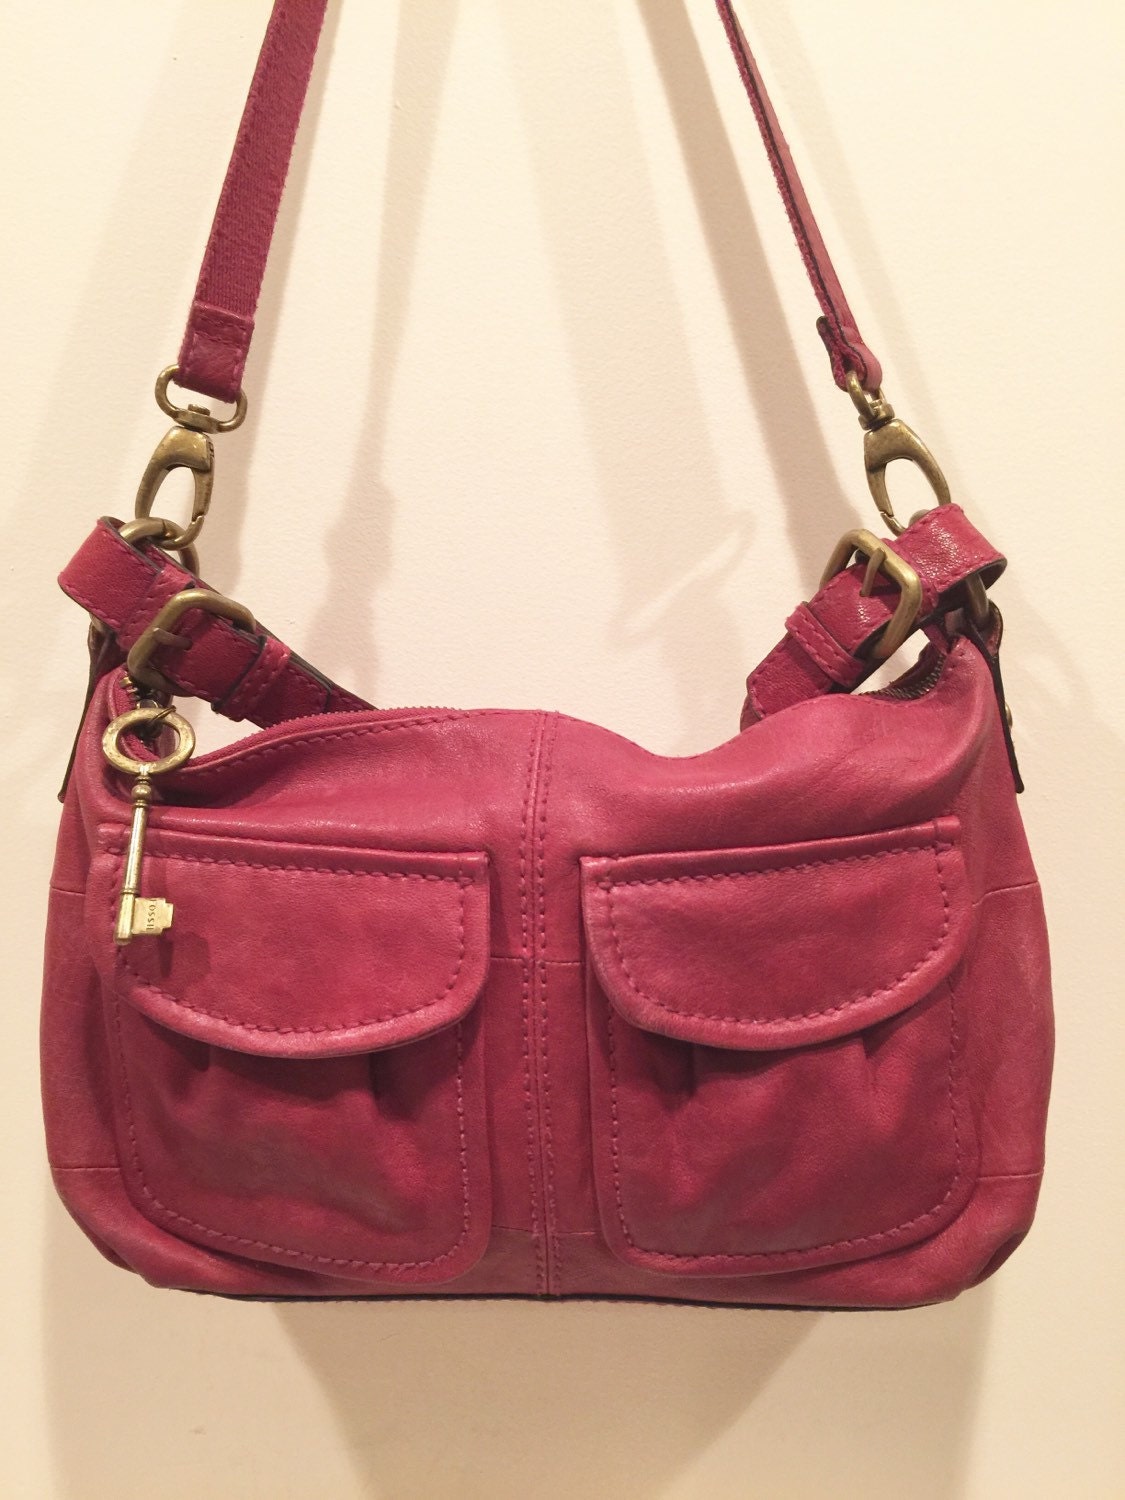 Fossil handbag leather purse shoulder bag satchel pink